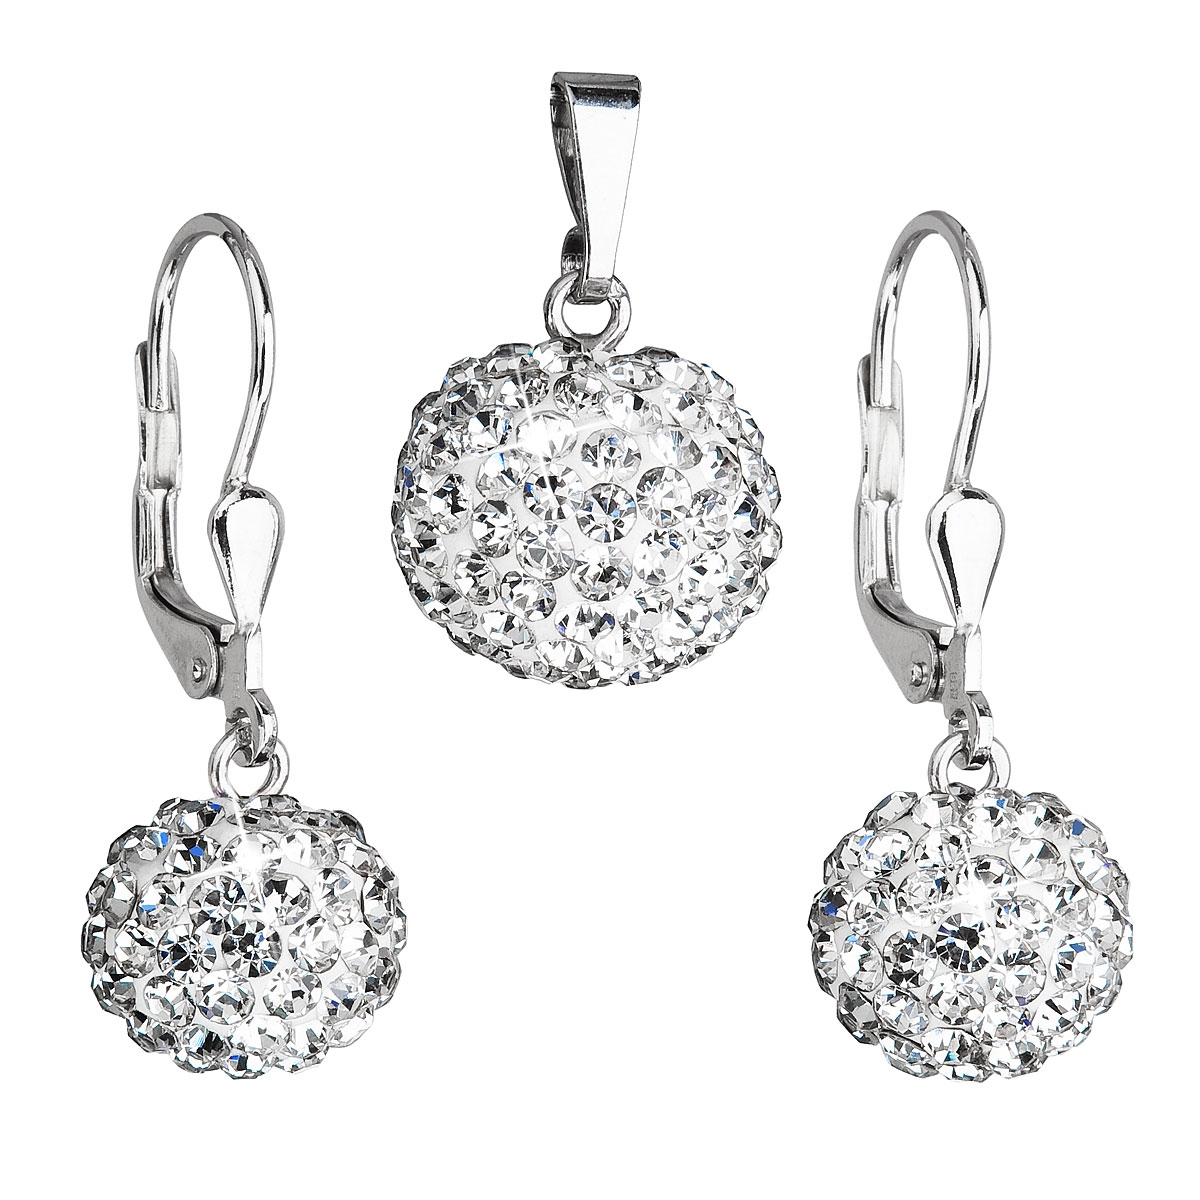 Sada šperkov guličky s kamienkami Crystals from Swarovski ® Crystal